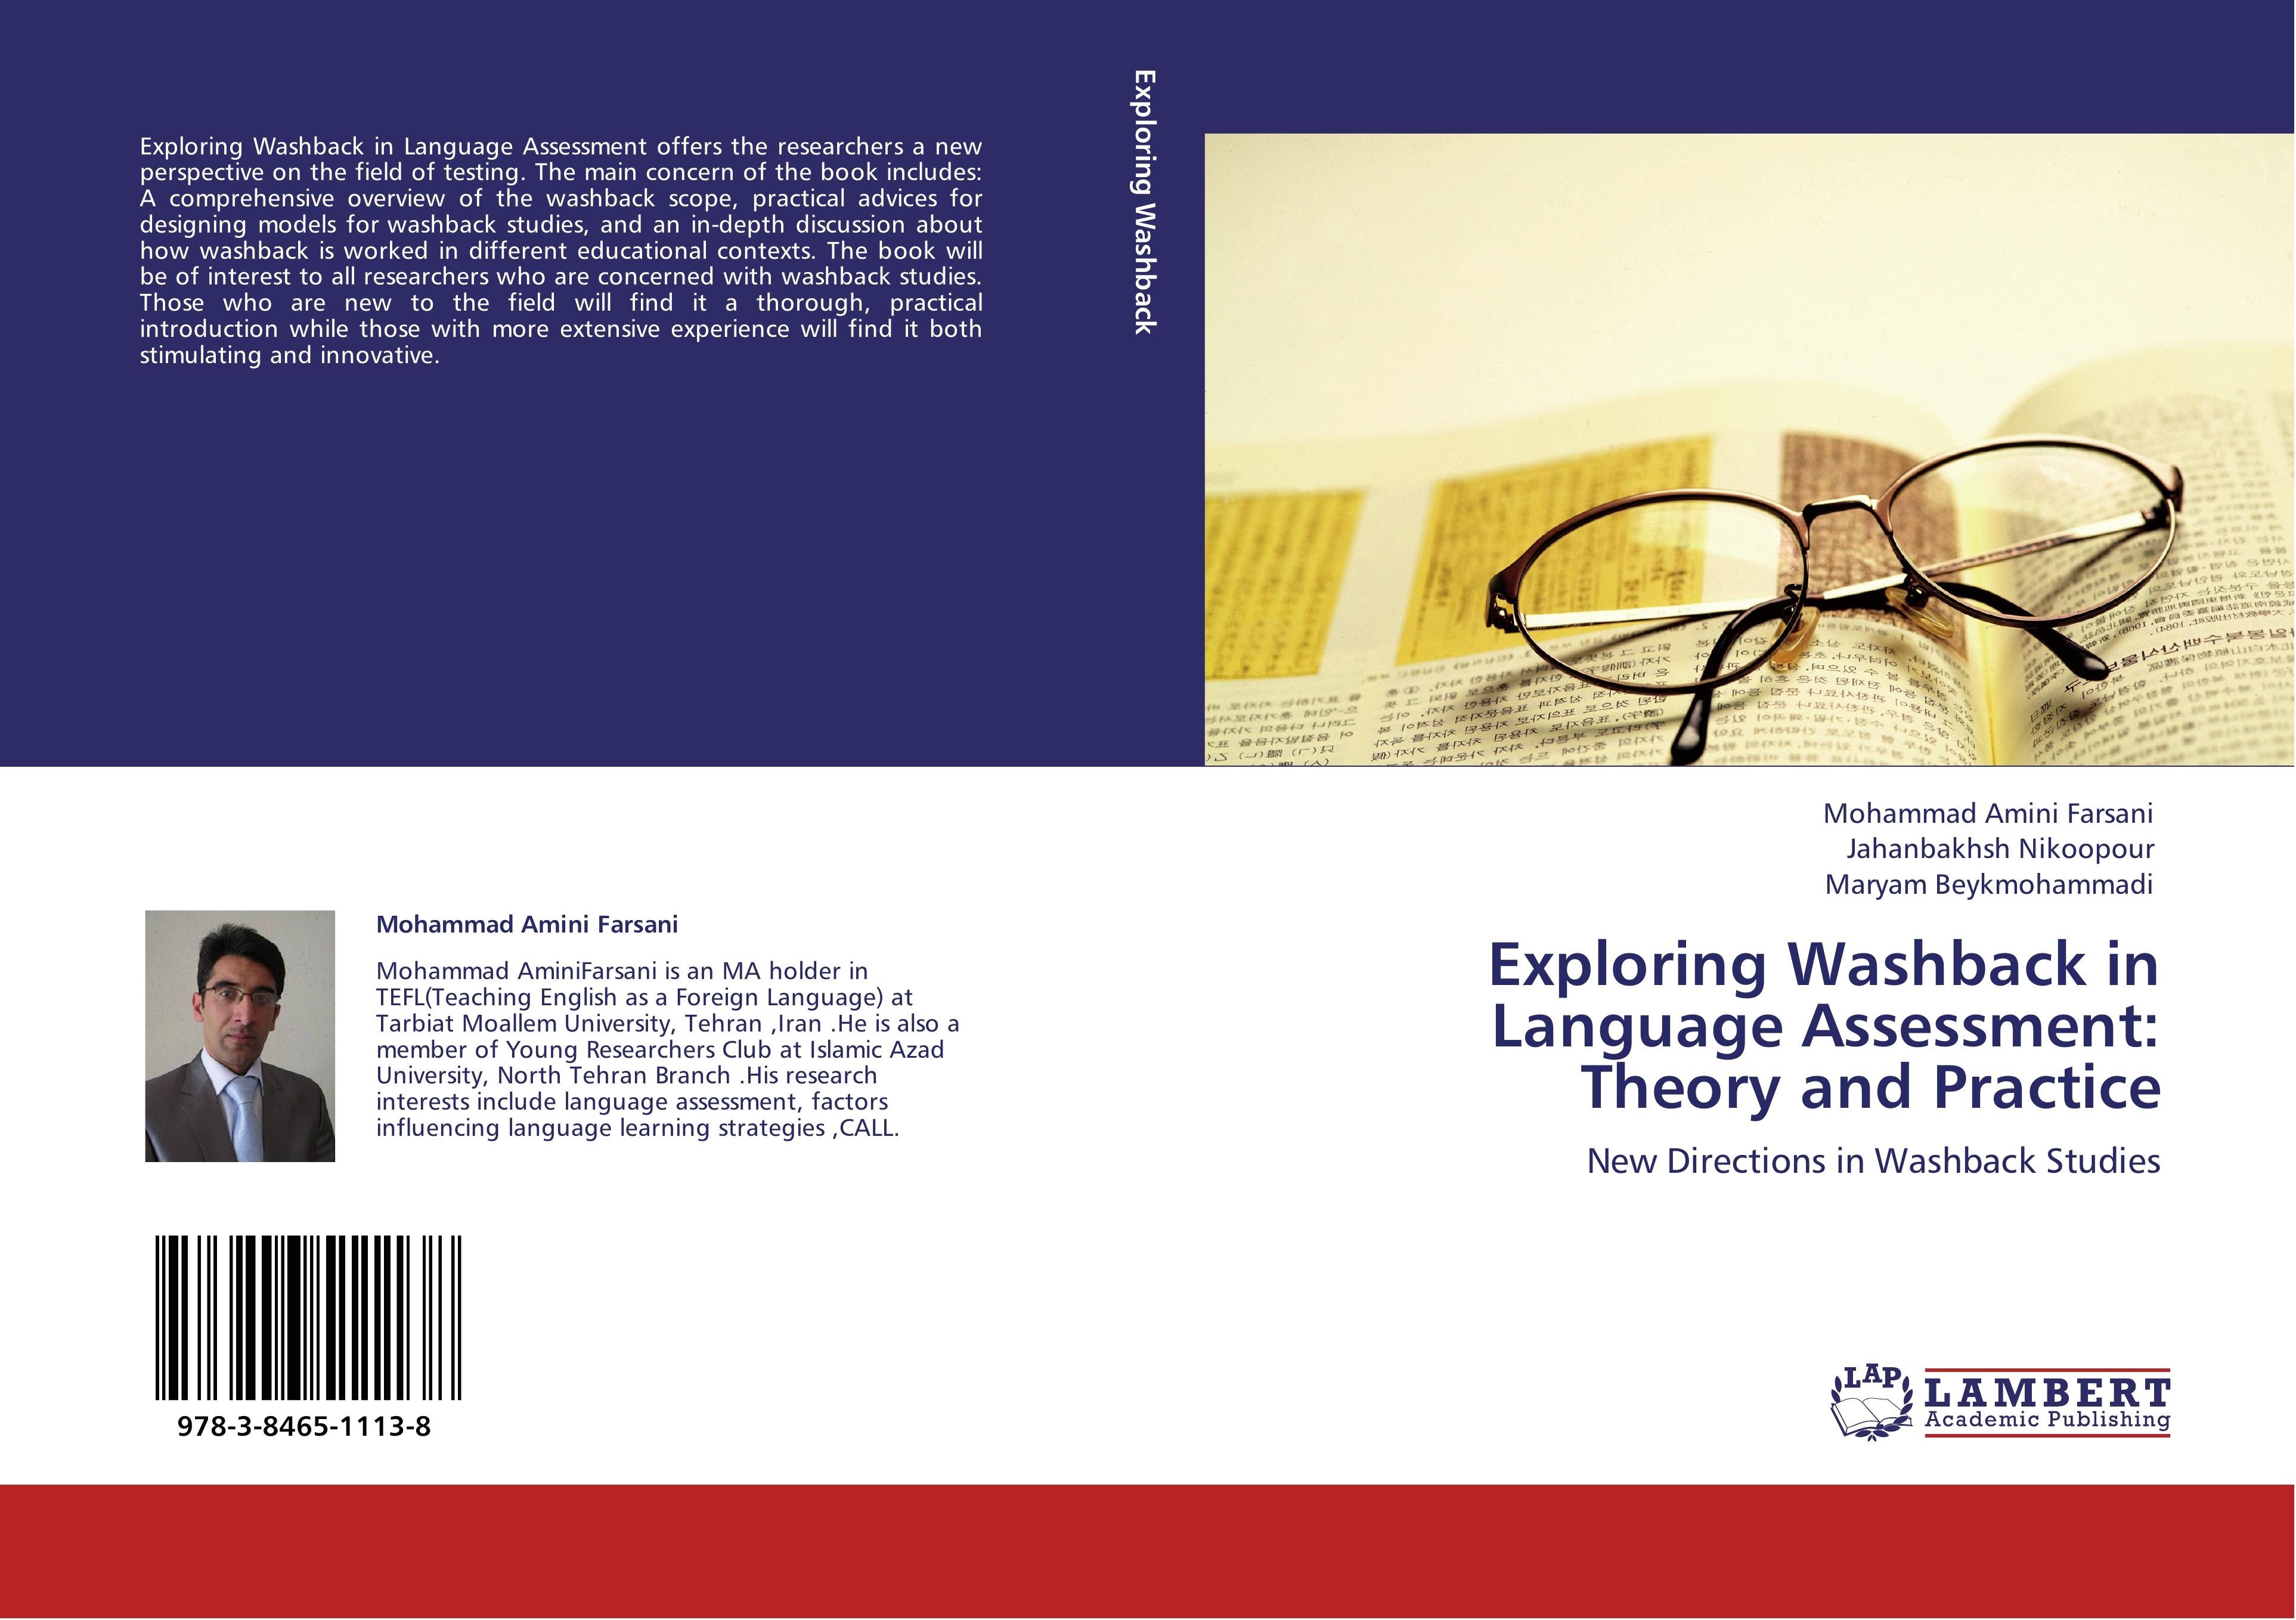 Exploring Washback in Language Assessment: Theory and Practice - Mohammad Amini Farsani Jahanbakhsh Nikoopour Maryam Beykmohammadi